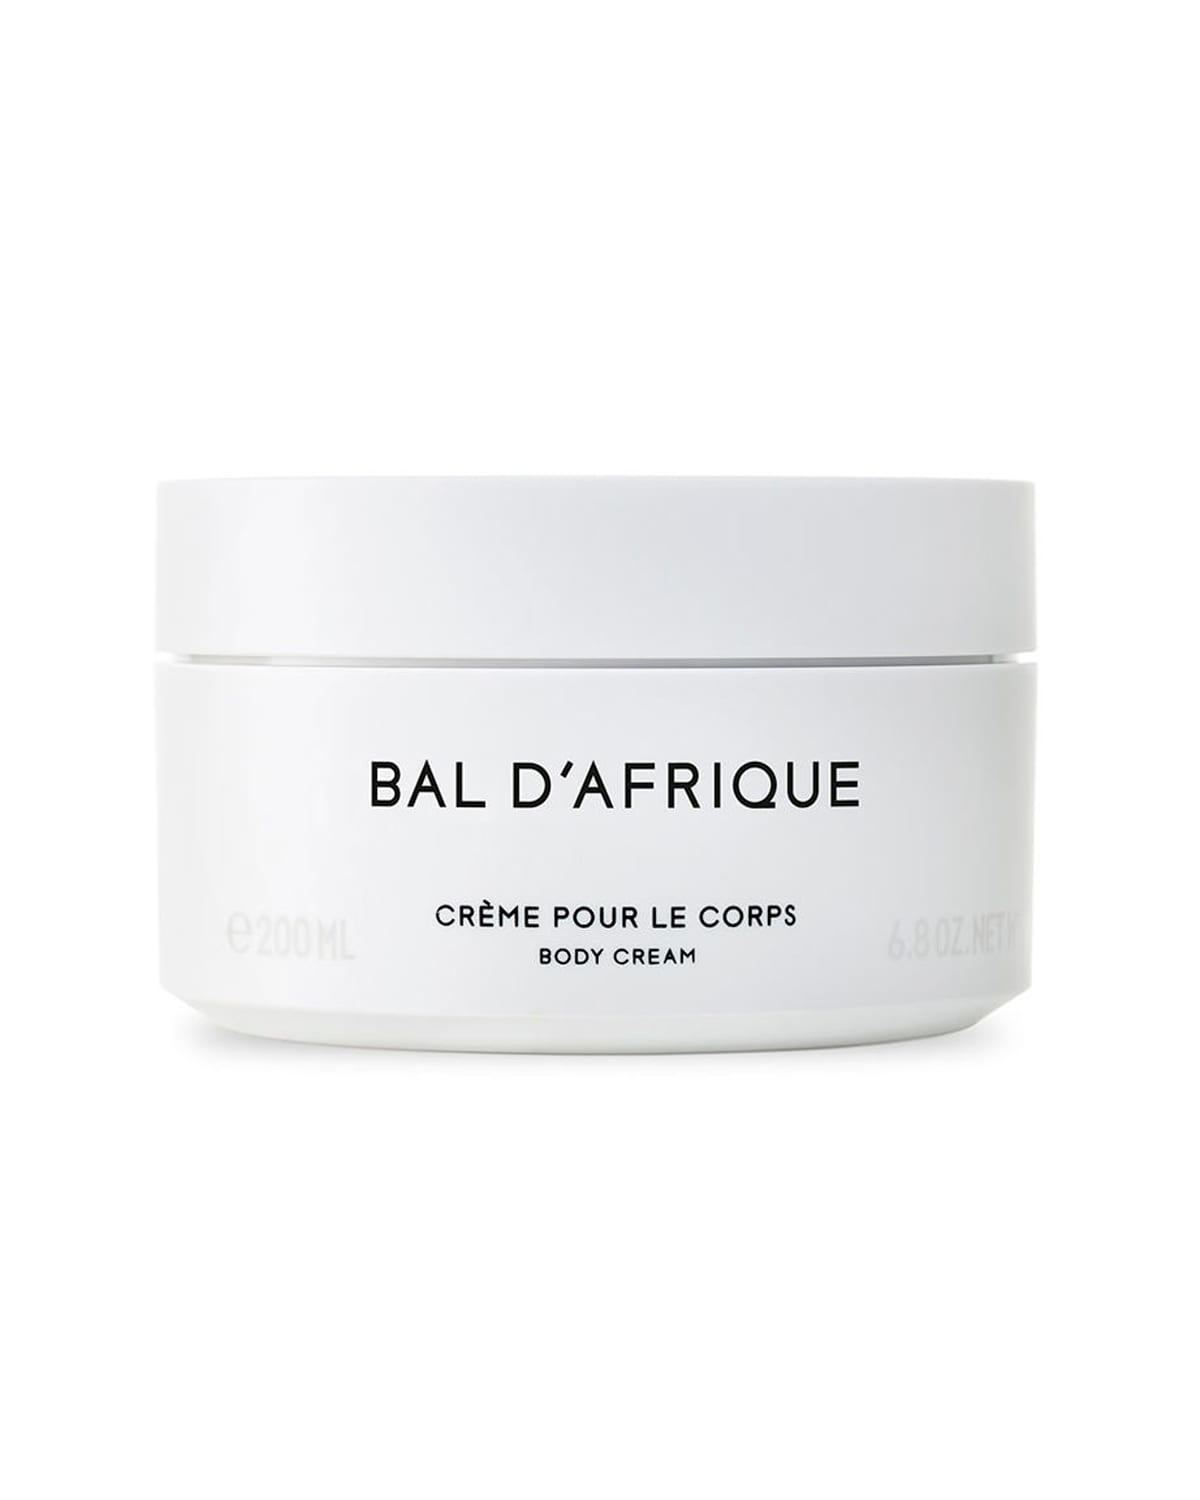 Bal D'Afrique Creme Pour Le Corps Body Cream, 6.8 oz.